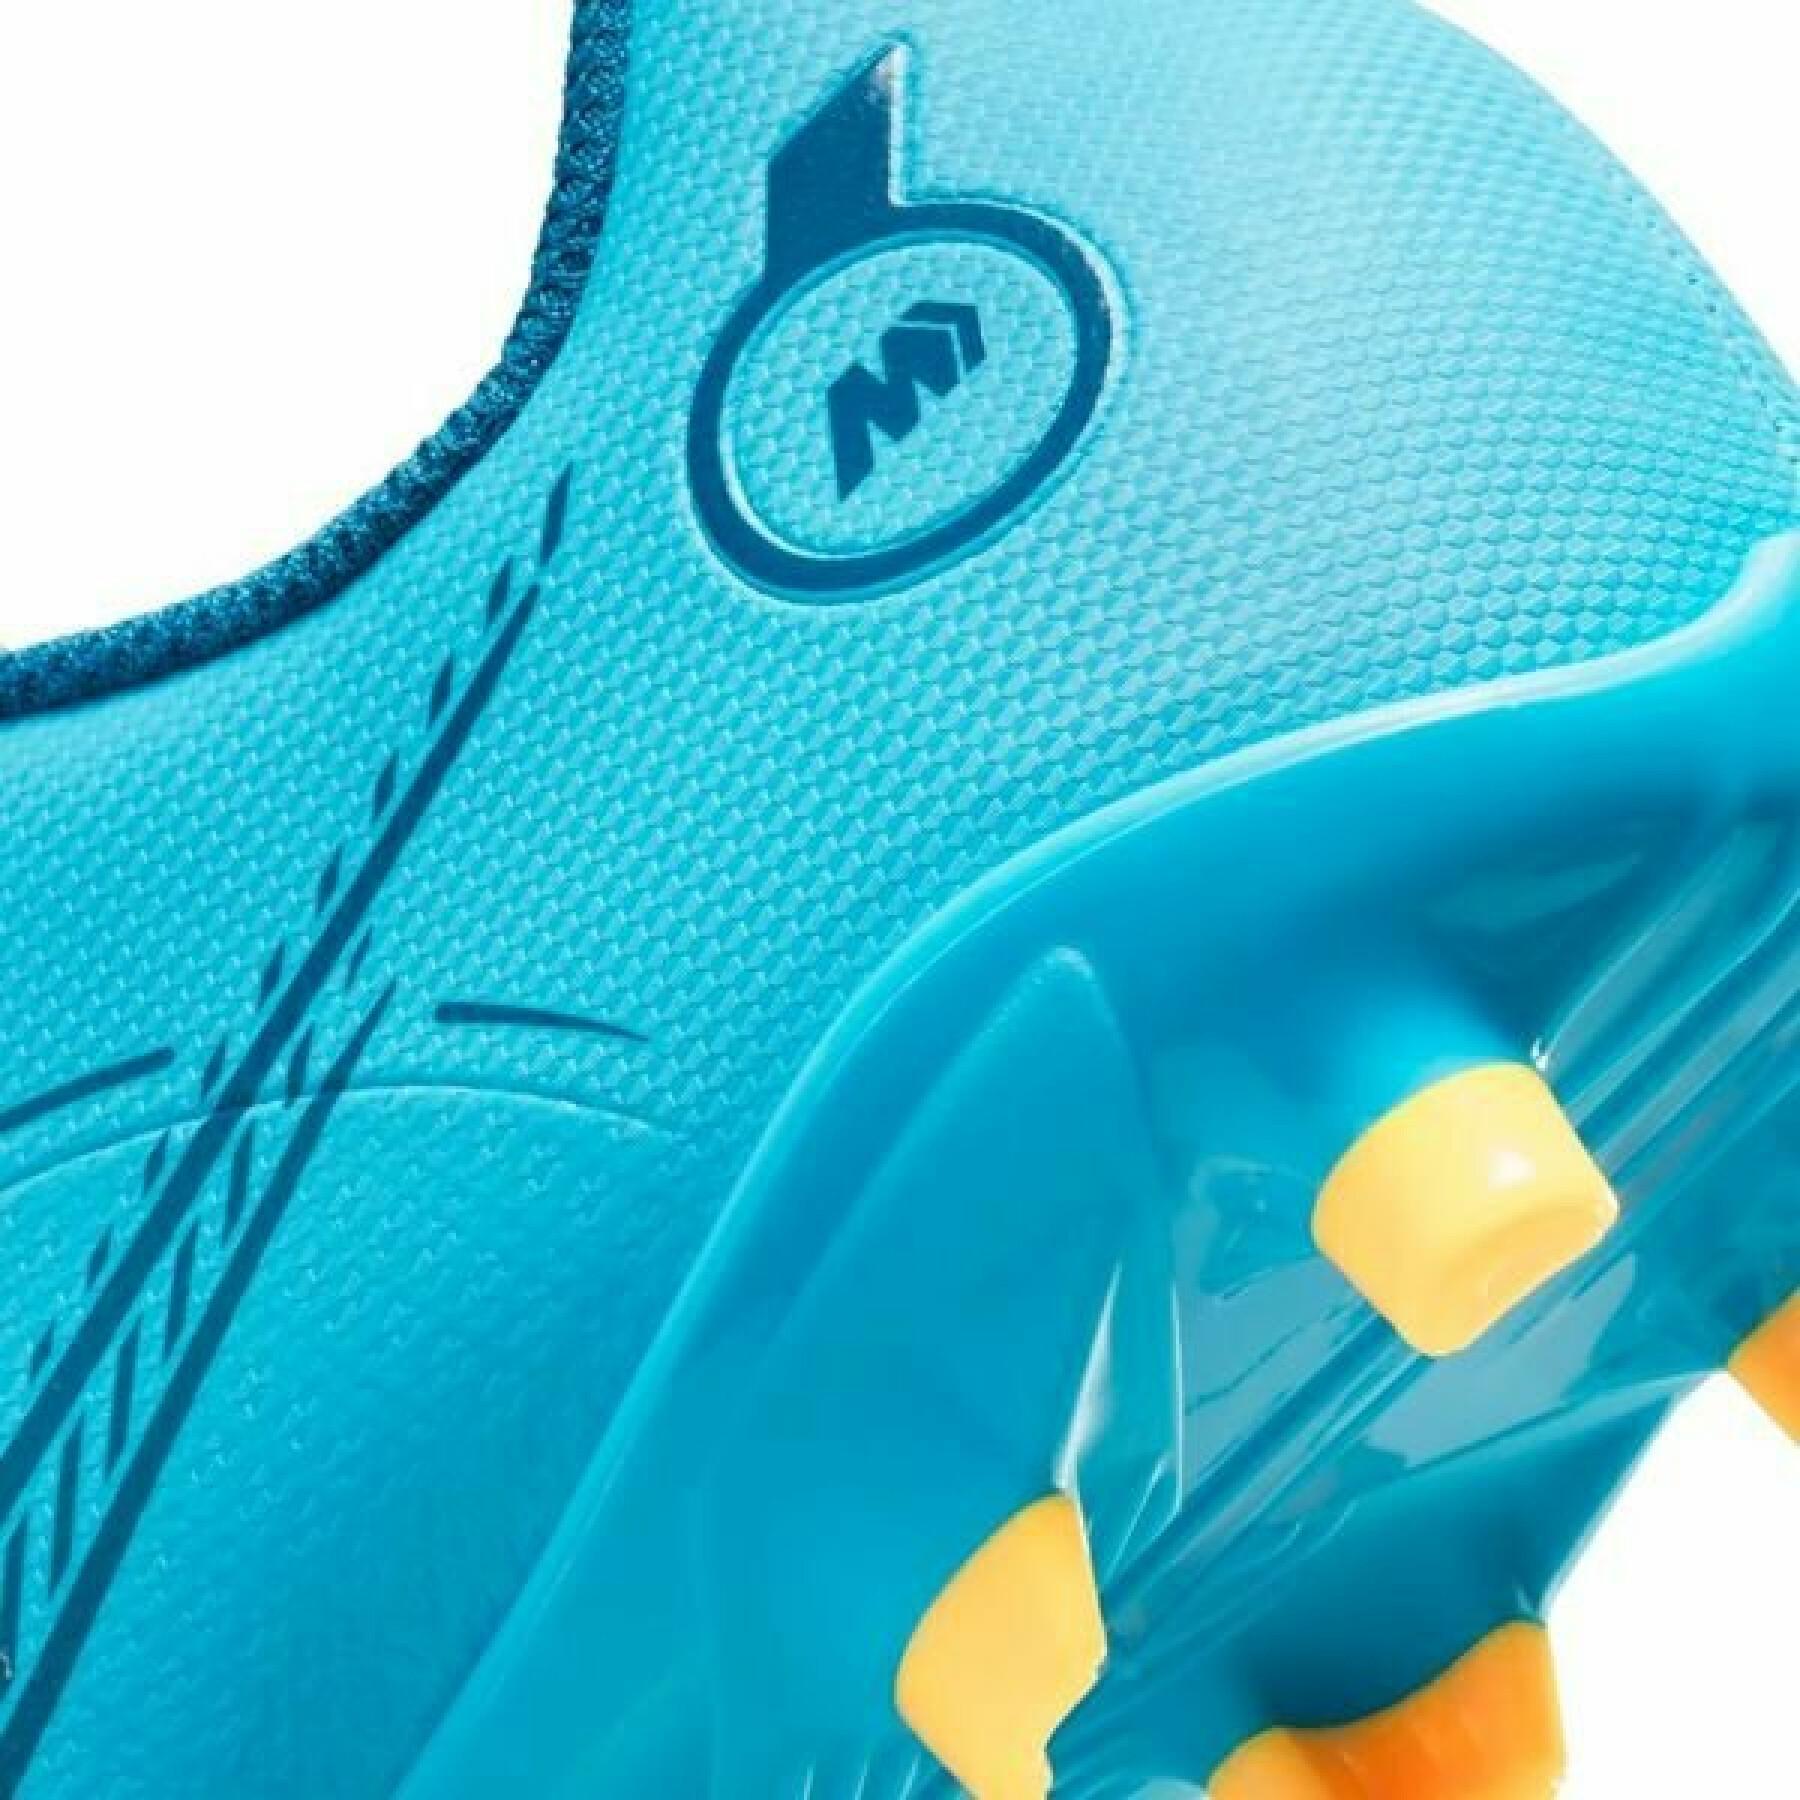 Scarpe da calcio per bambini Nike Jr Vapor 14 club FG/MG -Blueprint Pack